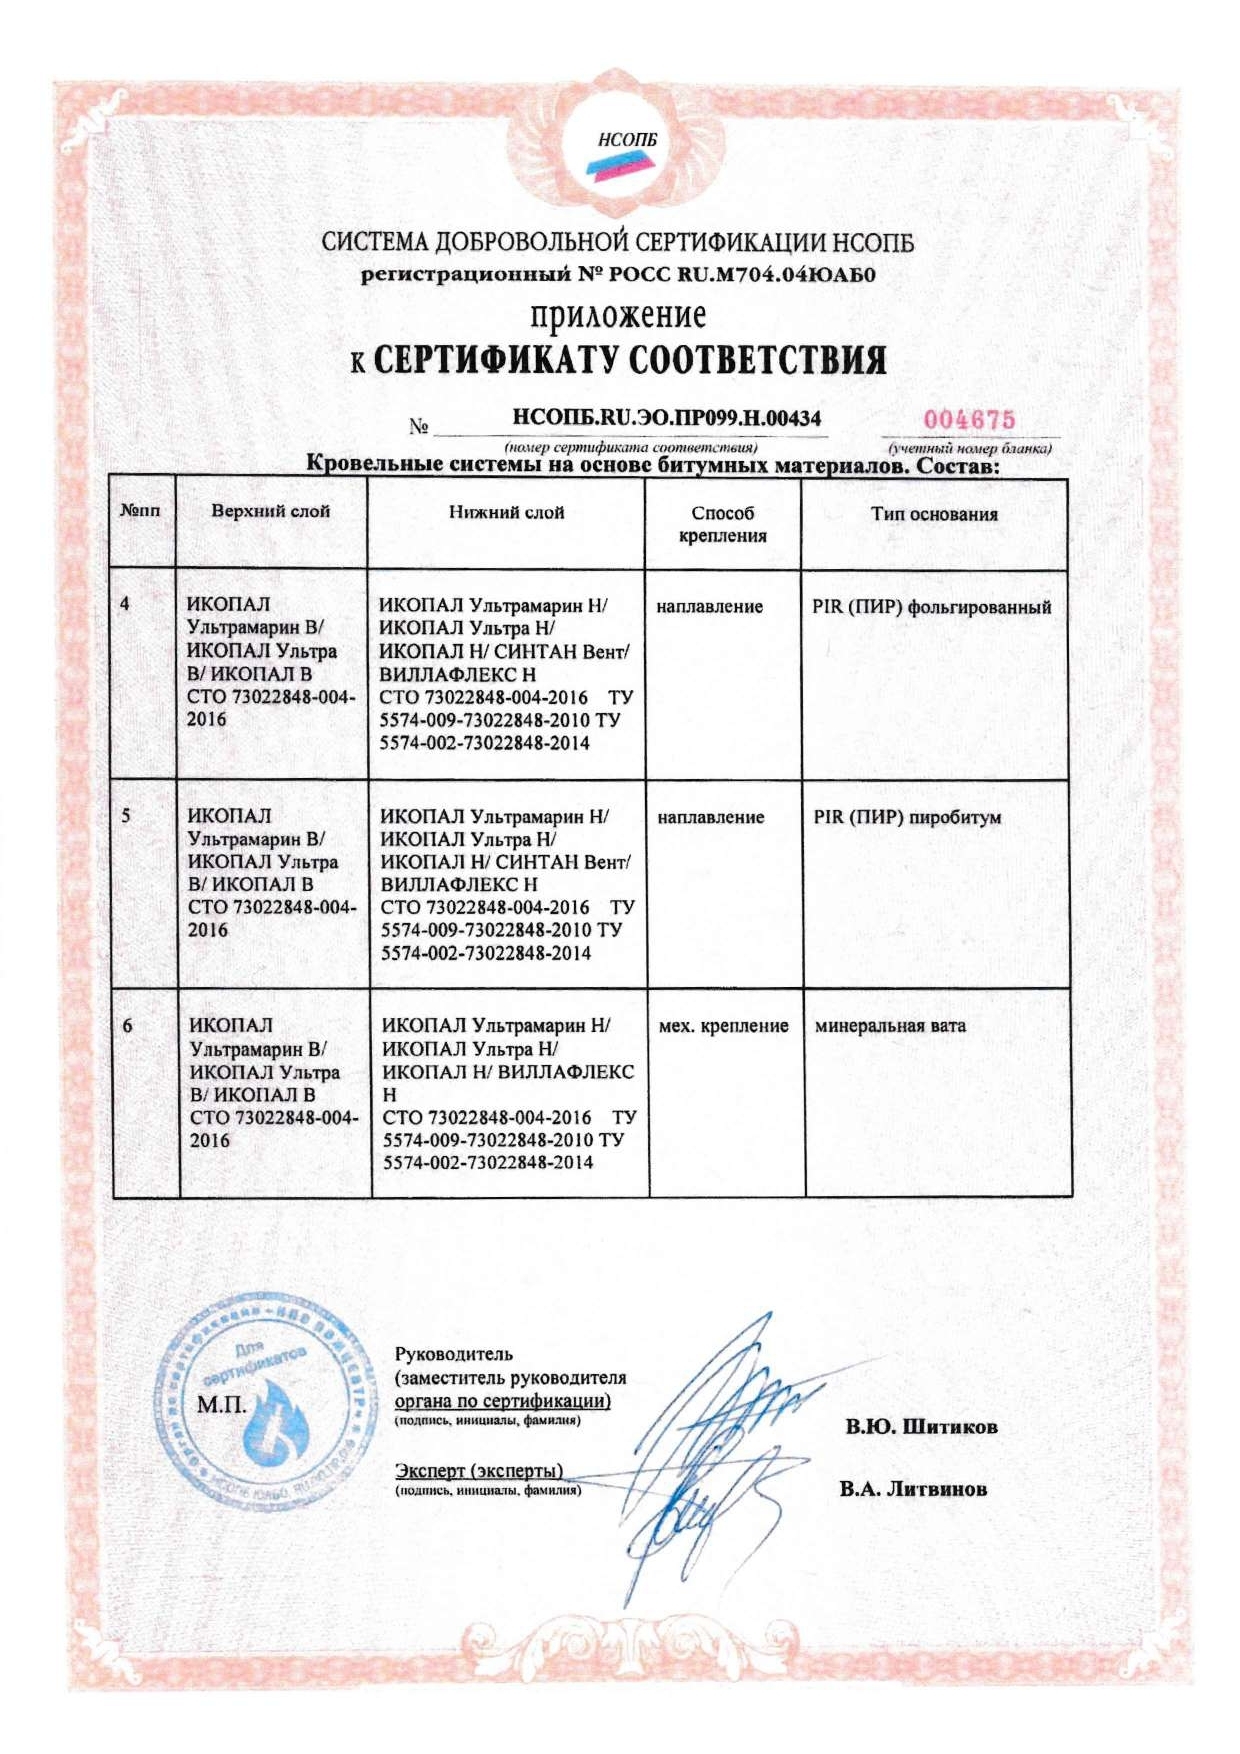 Сертификат соответствия о Техническом регламенте о требованиях пожарной безопасности 3